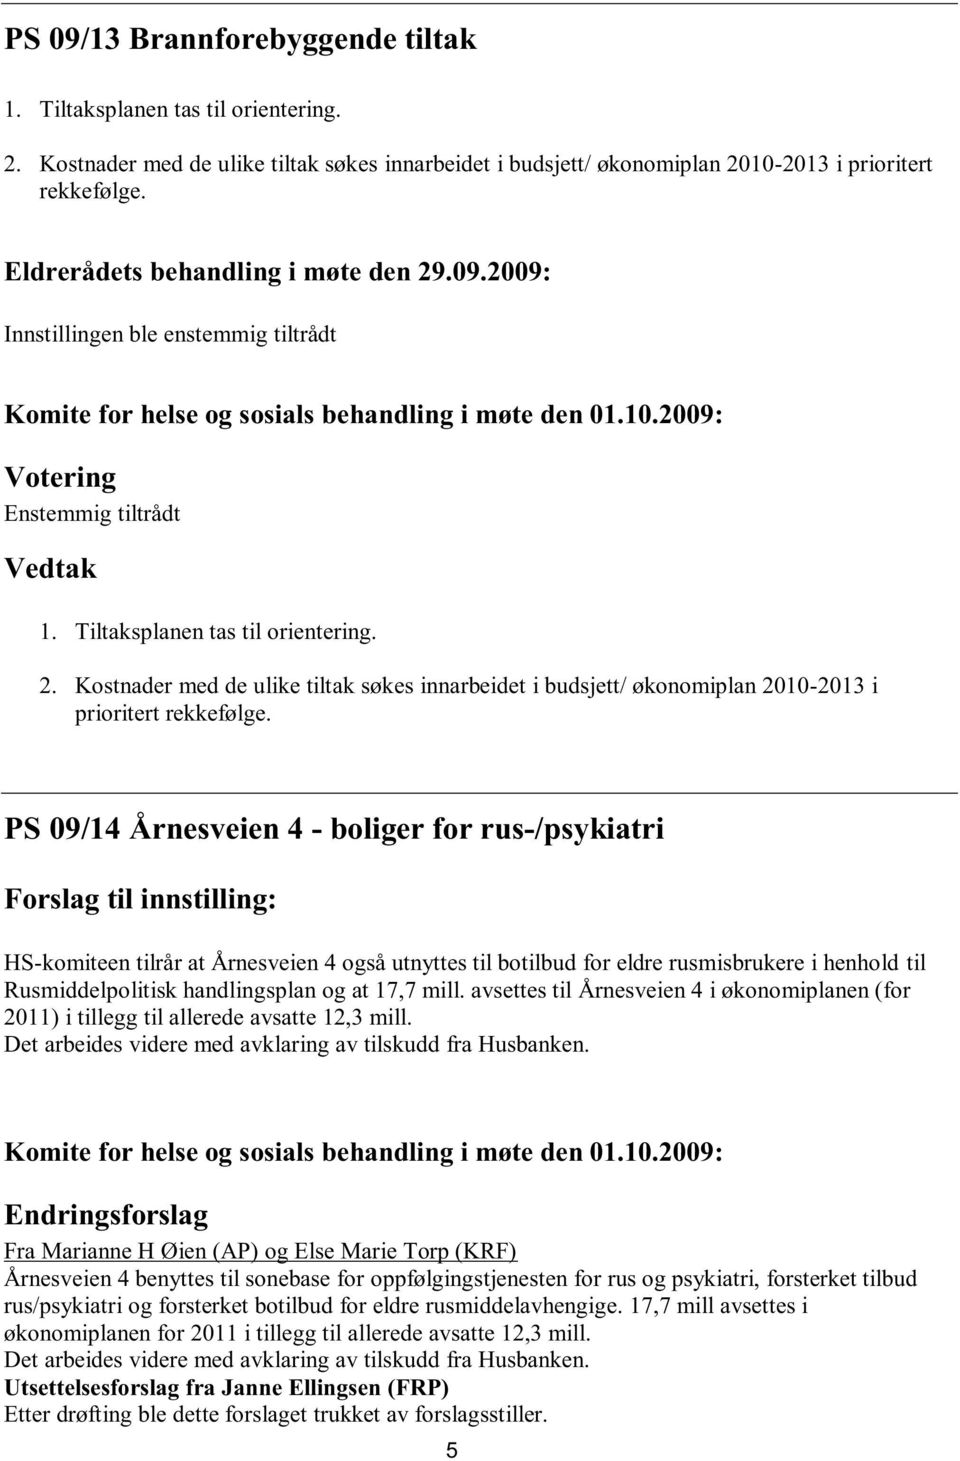 PS 09/14 Årnesveien 4 - boliger for rus-/psykiatri : HS-komiteen tilrår at Årnesveien 4 også utnyttes til botilbud for eldre rusmisbrukere i henhold til Rusmiddelpolitisk handlingsplan og at 17,7